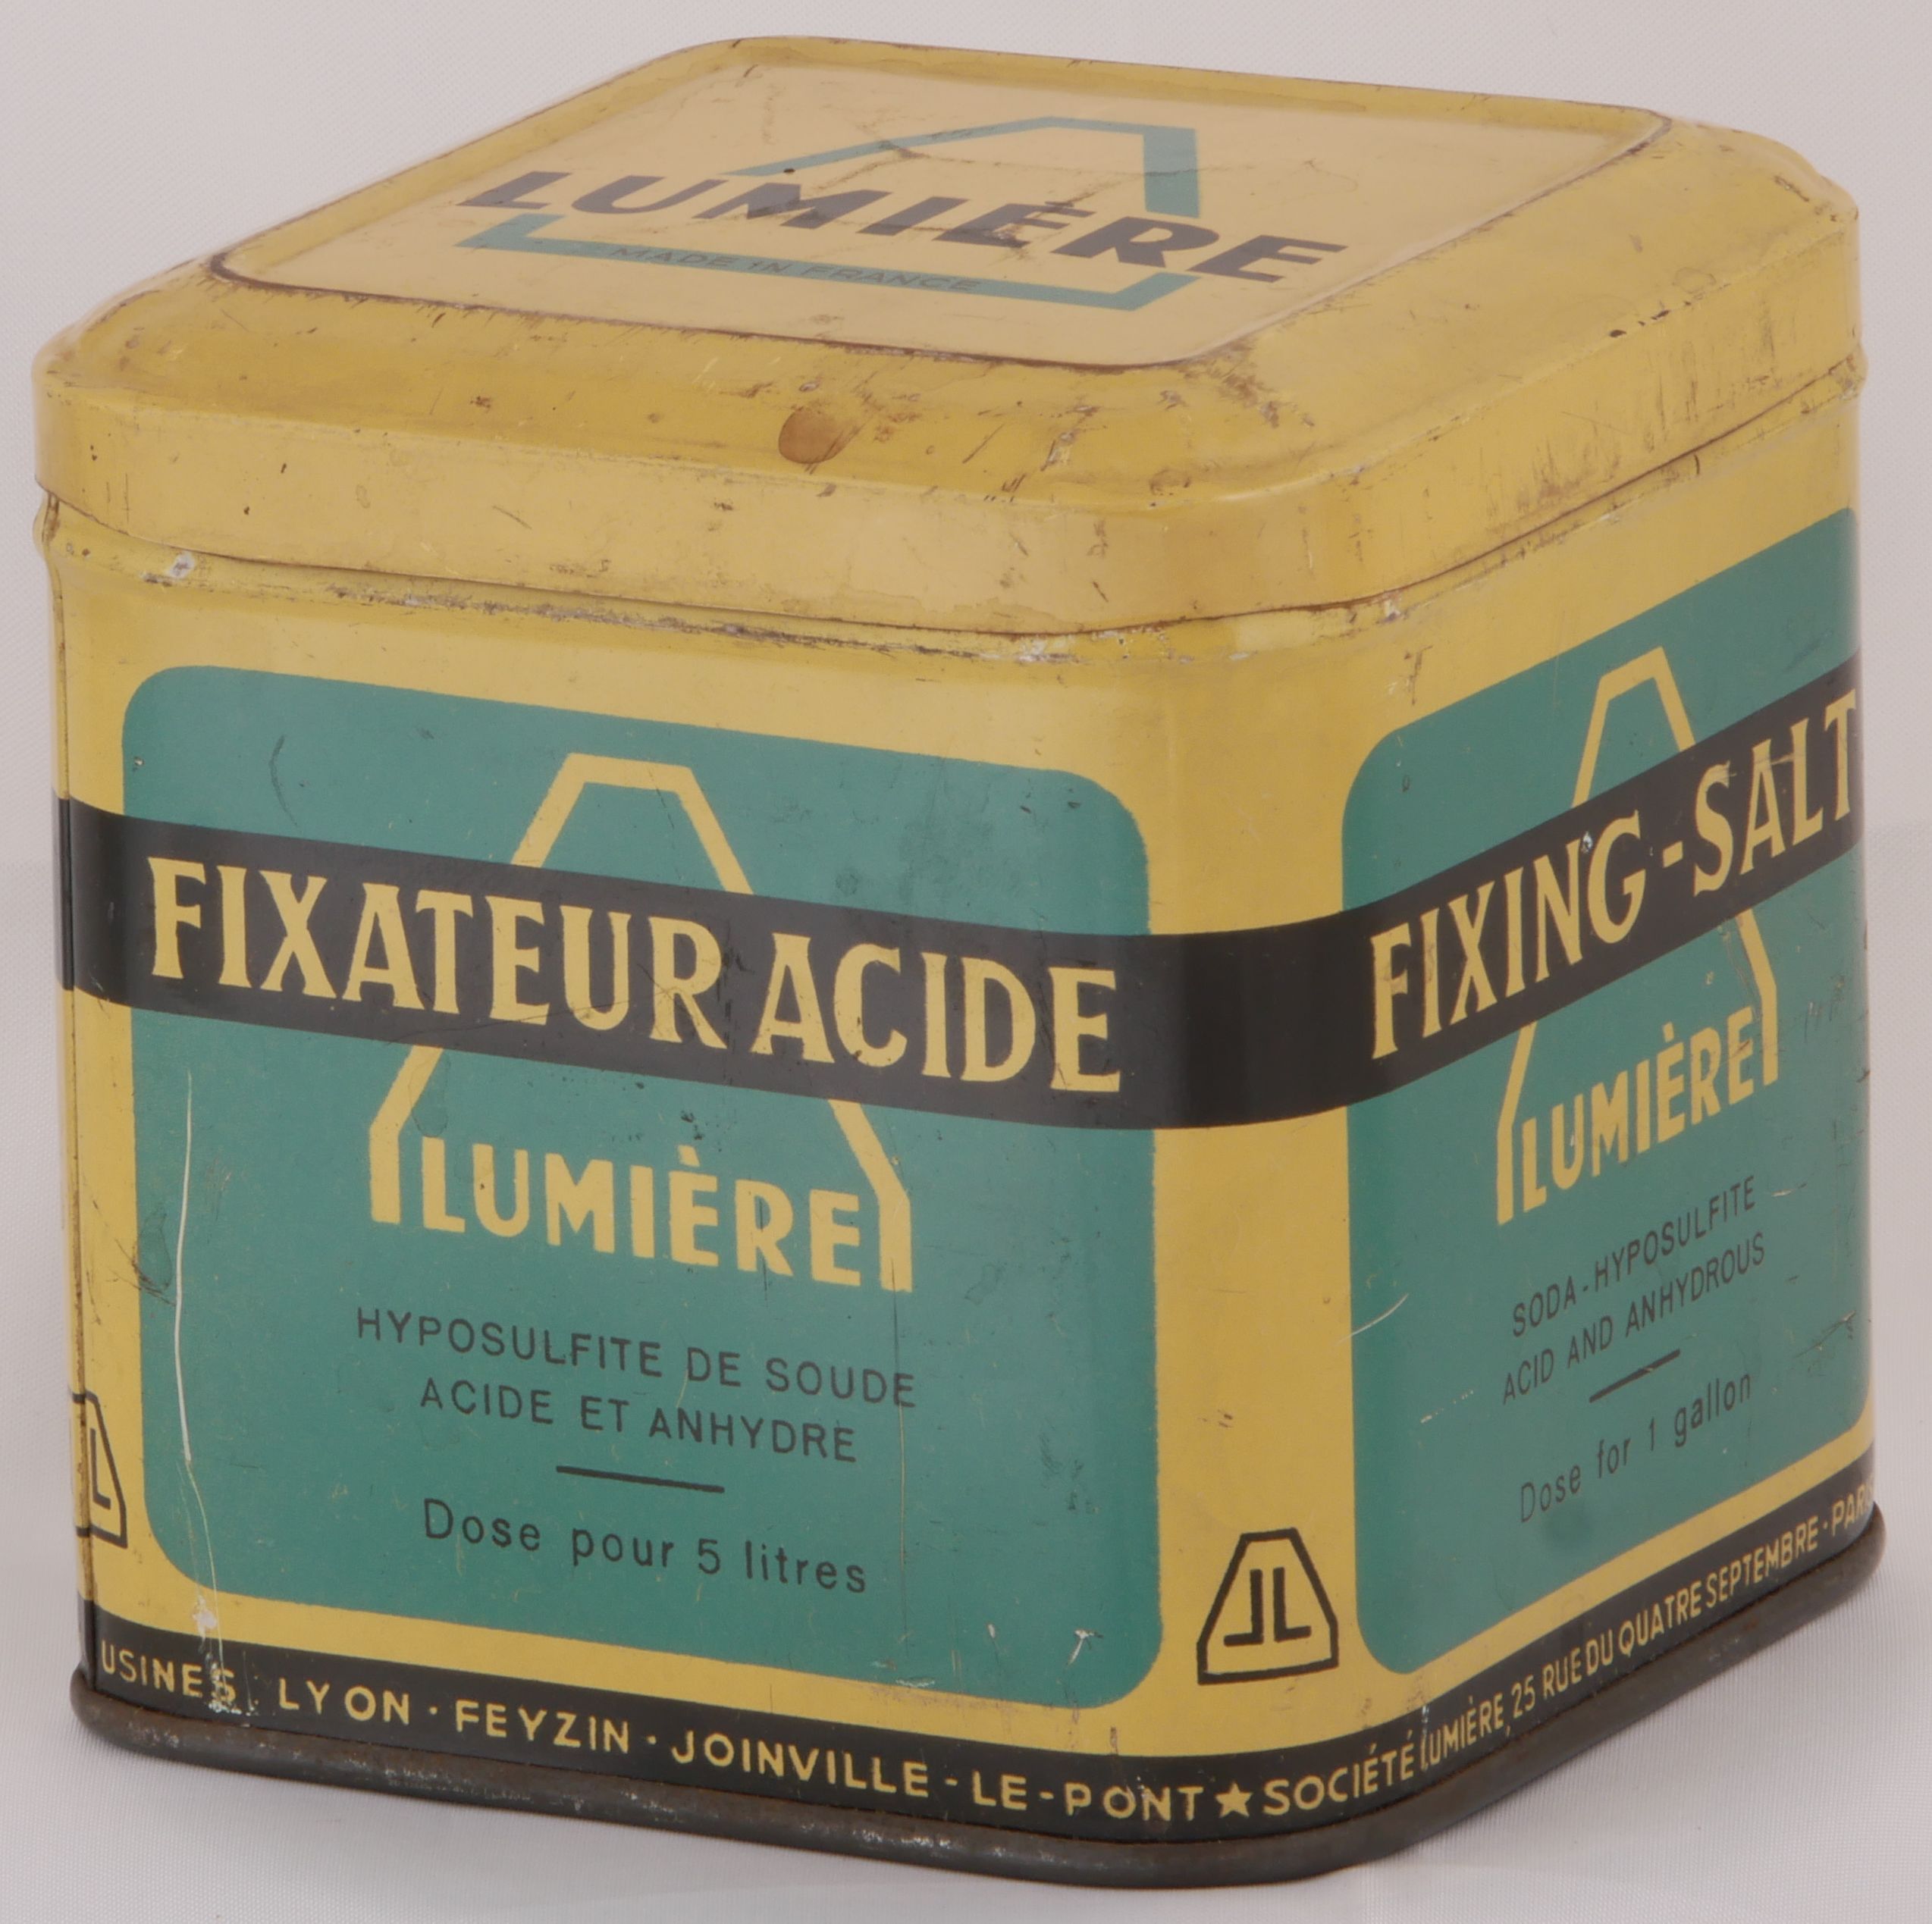 Fixateur Acide, dose pour 5 litres